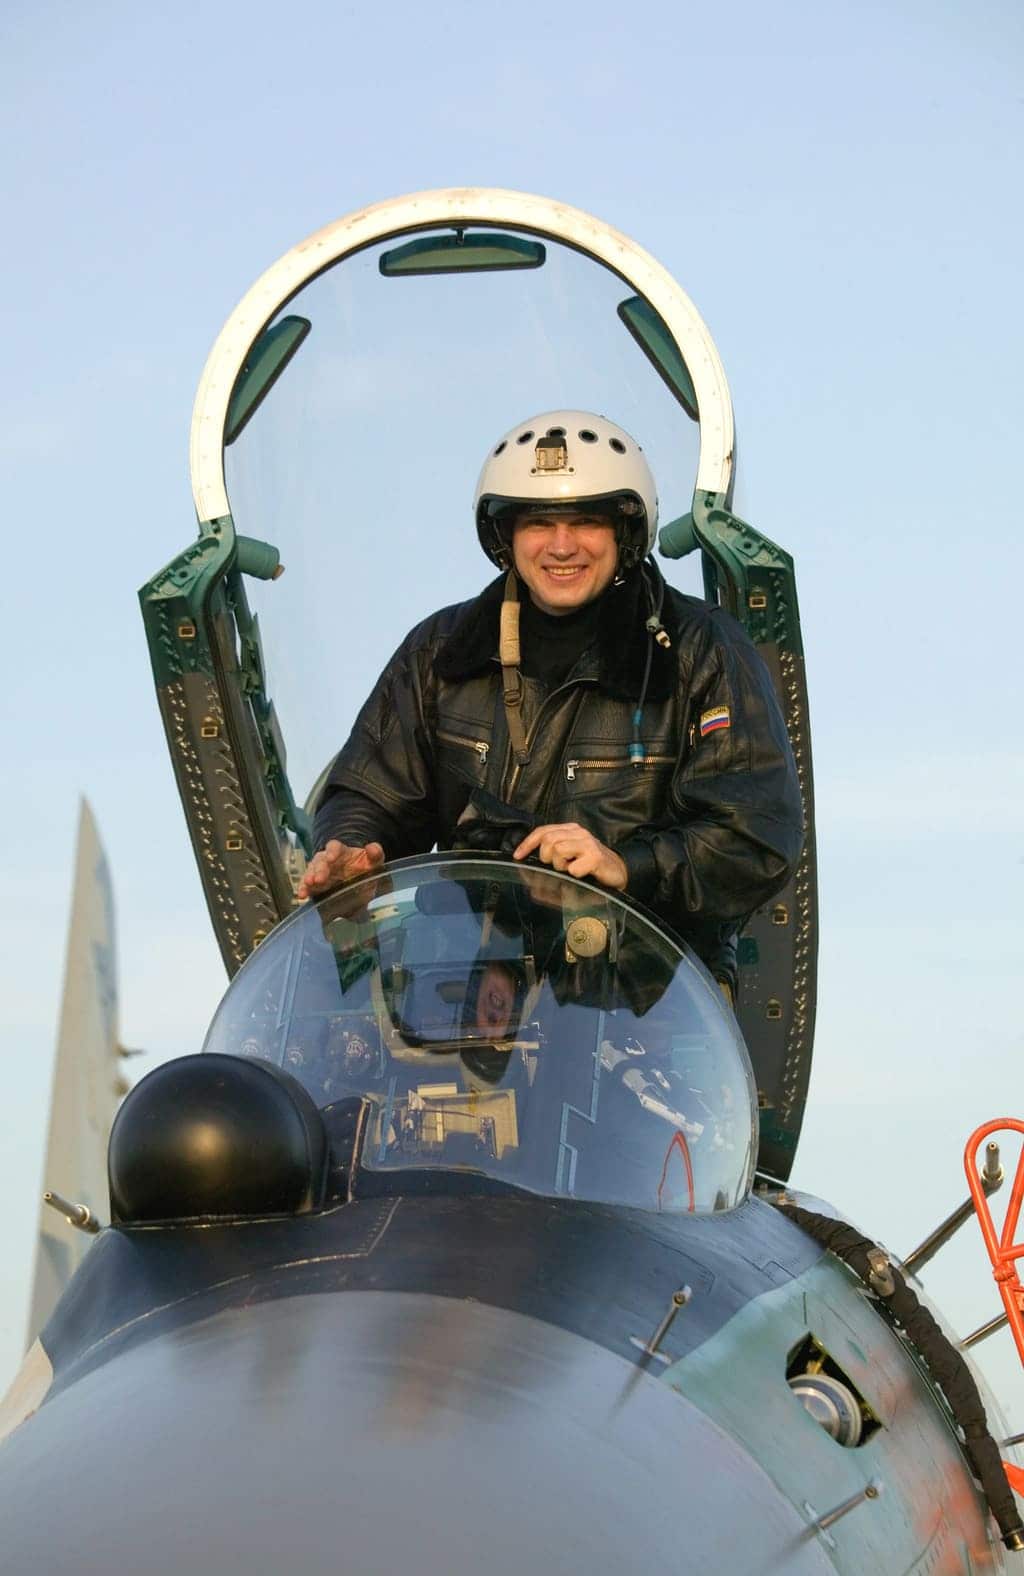 Летчик-испытатель АВПК «Сухой» Сергей Богдан в кабине 1-го опытного самолета Су‑35 борт 901. Он выполнил первый полет на самолете 19.02.08 г.